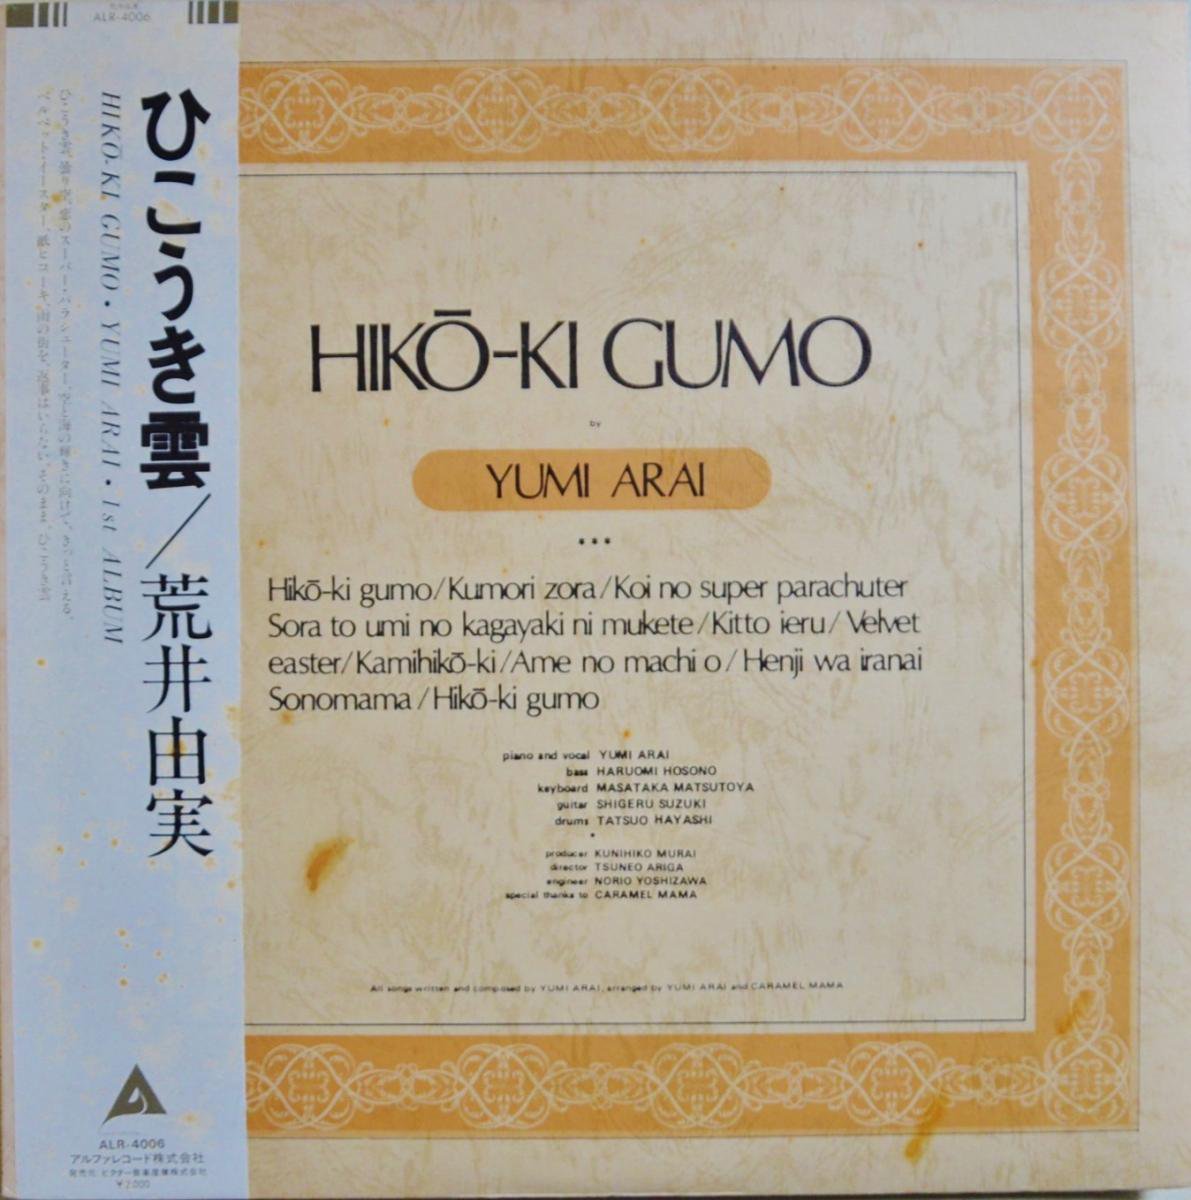 荒井由実 YUMI ARAI / ひこうき雲 HIKO-KI GUMO (LP)